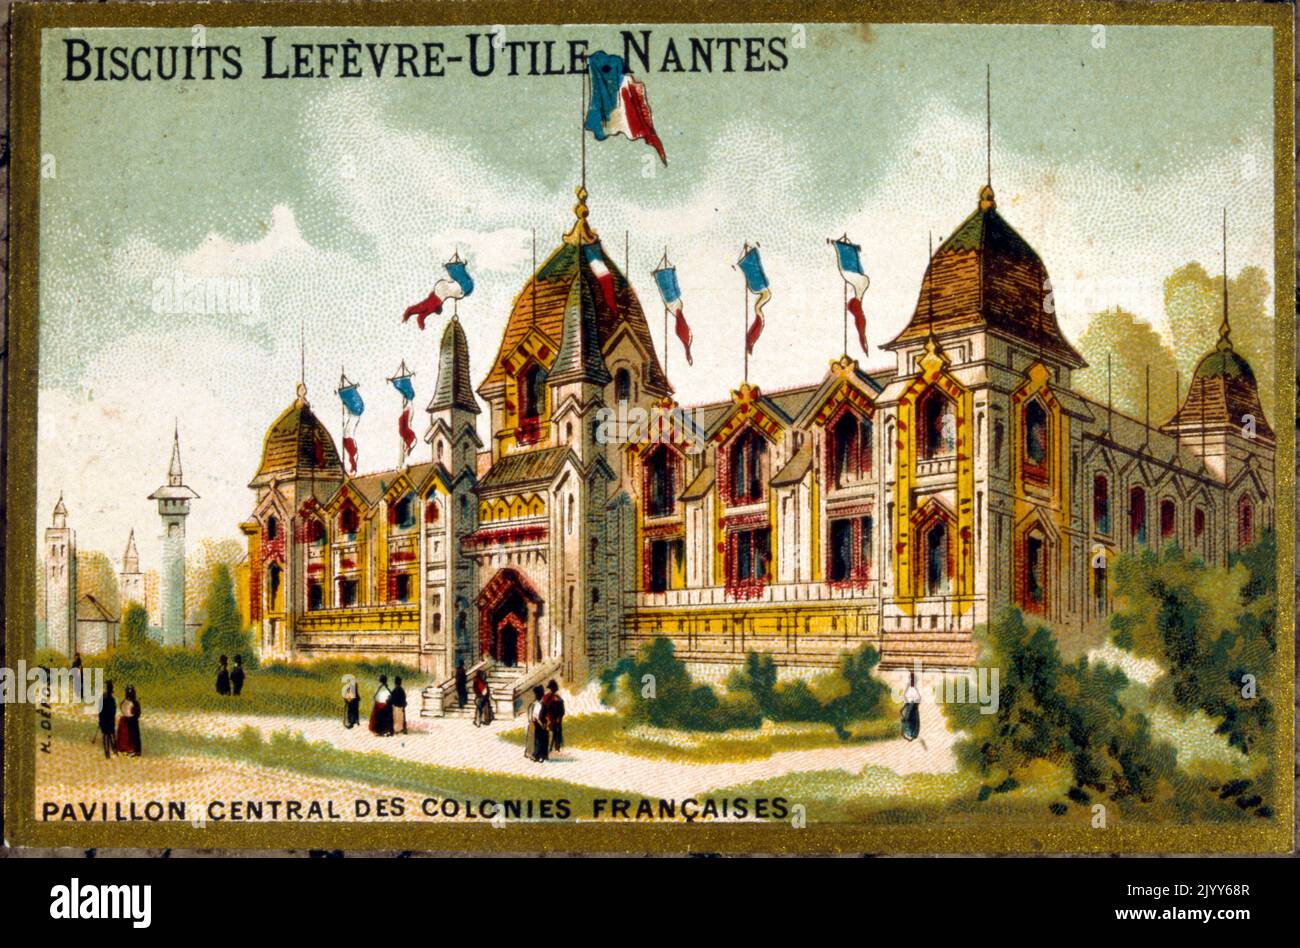 Image de l'usine de biscuit Lefevre-Utile à Nantes ; image commémorative du Pavillon central des colonies françaises. Banque D'Images